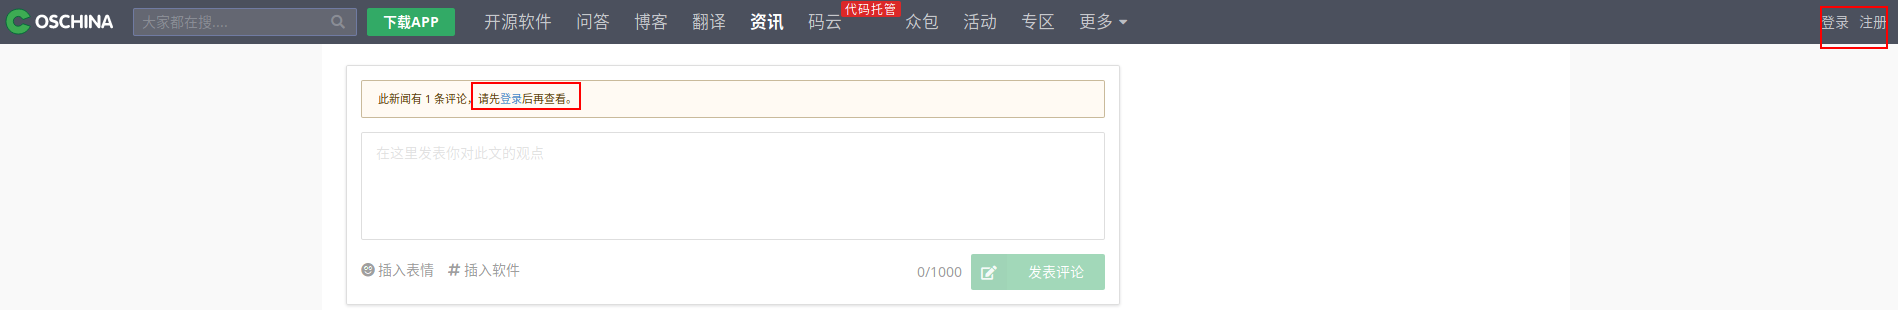 OSChina禁止匿名用户查看文章评论@2020-06-05